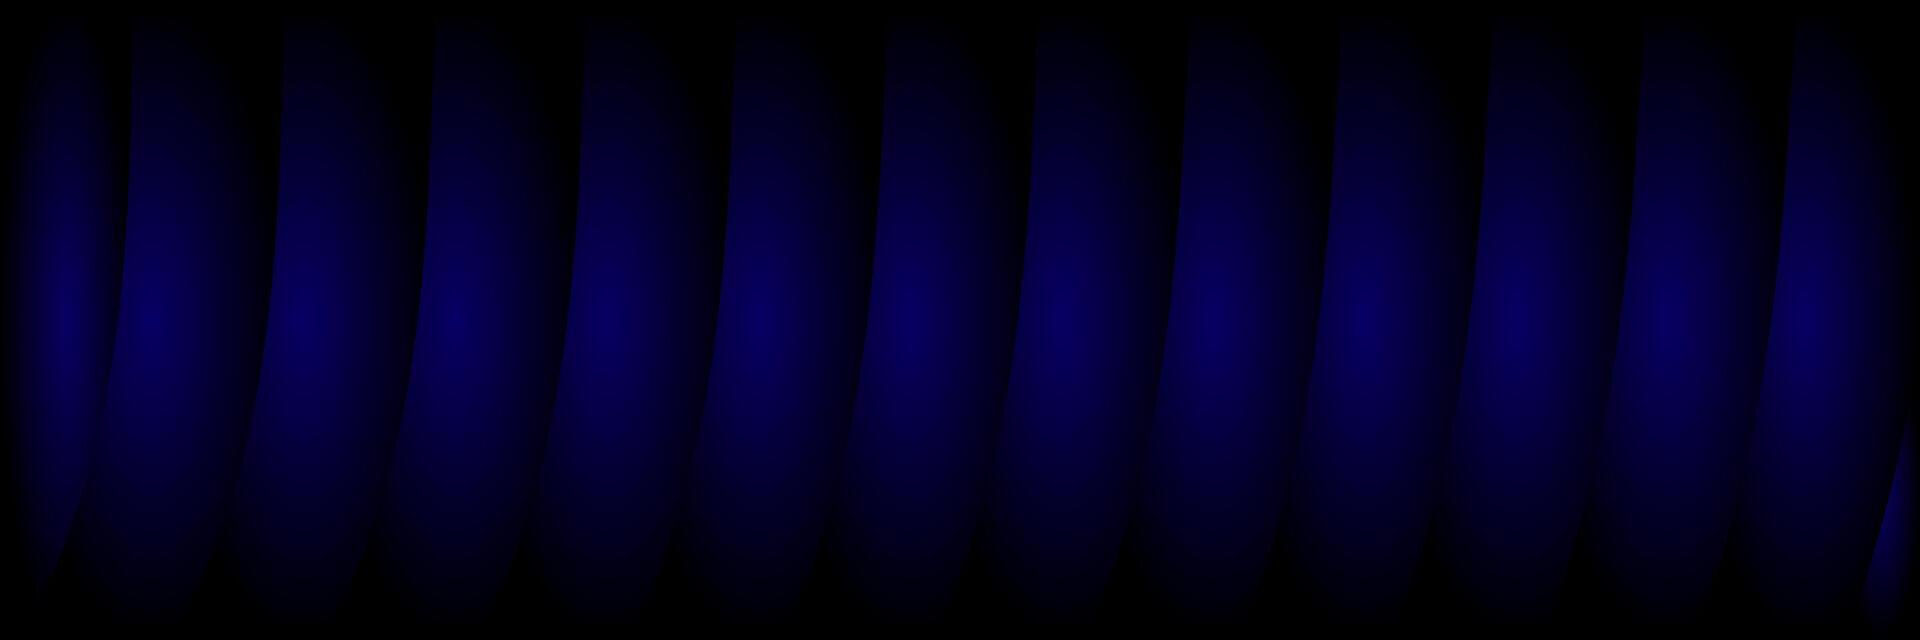 resumen oscuro elegante azul antecedentes vector